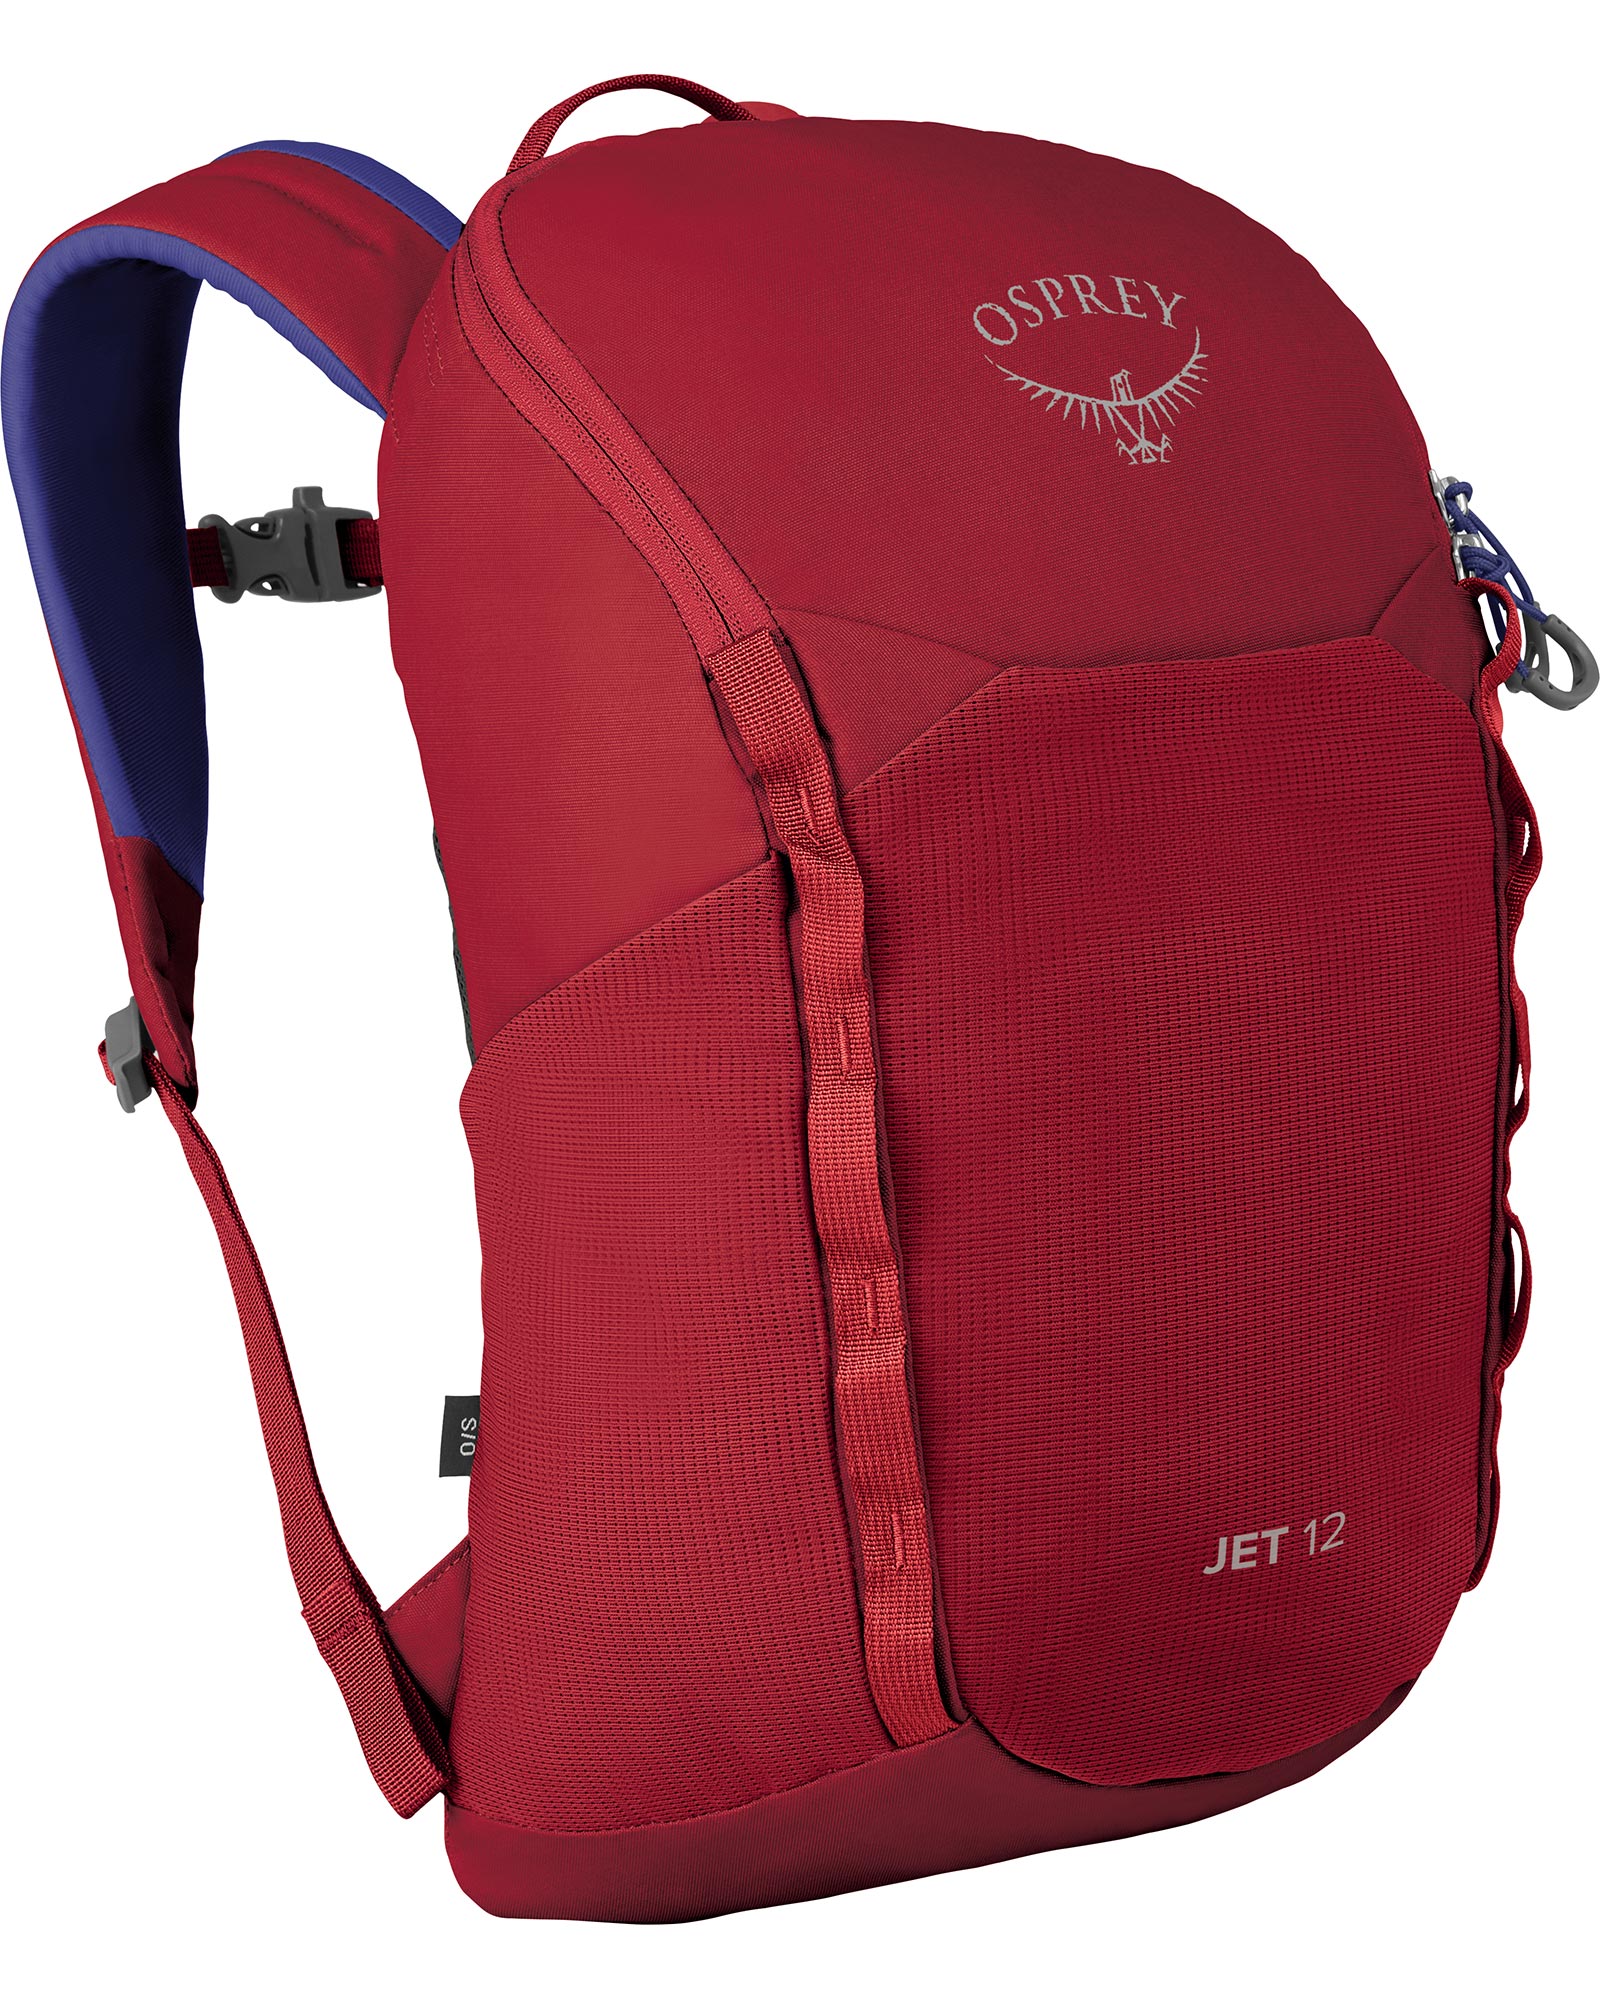 Osprey Jet 12 Kids Backpack